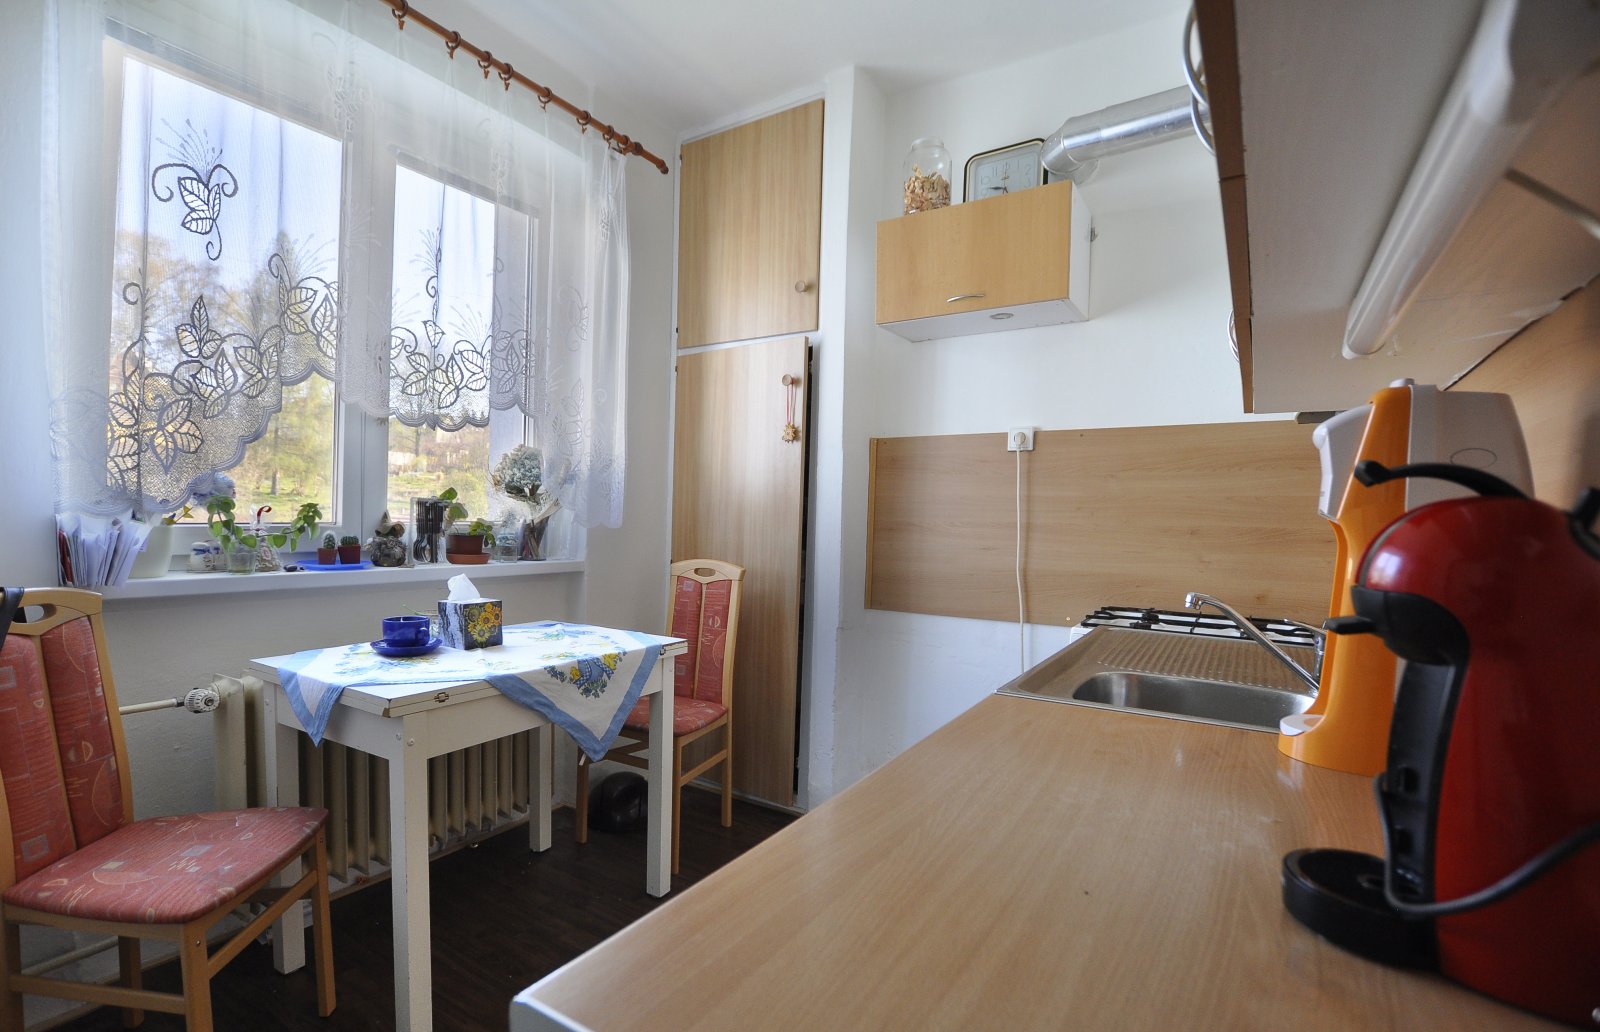 Rezervováno: Zděný byt 2+1 s menším balkonem, osobní vlastnictví, Trutnov, ulice Kryblická